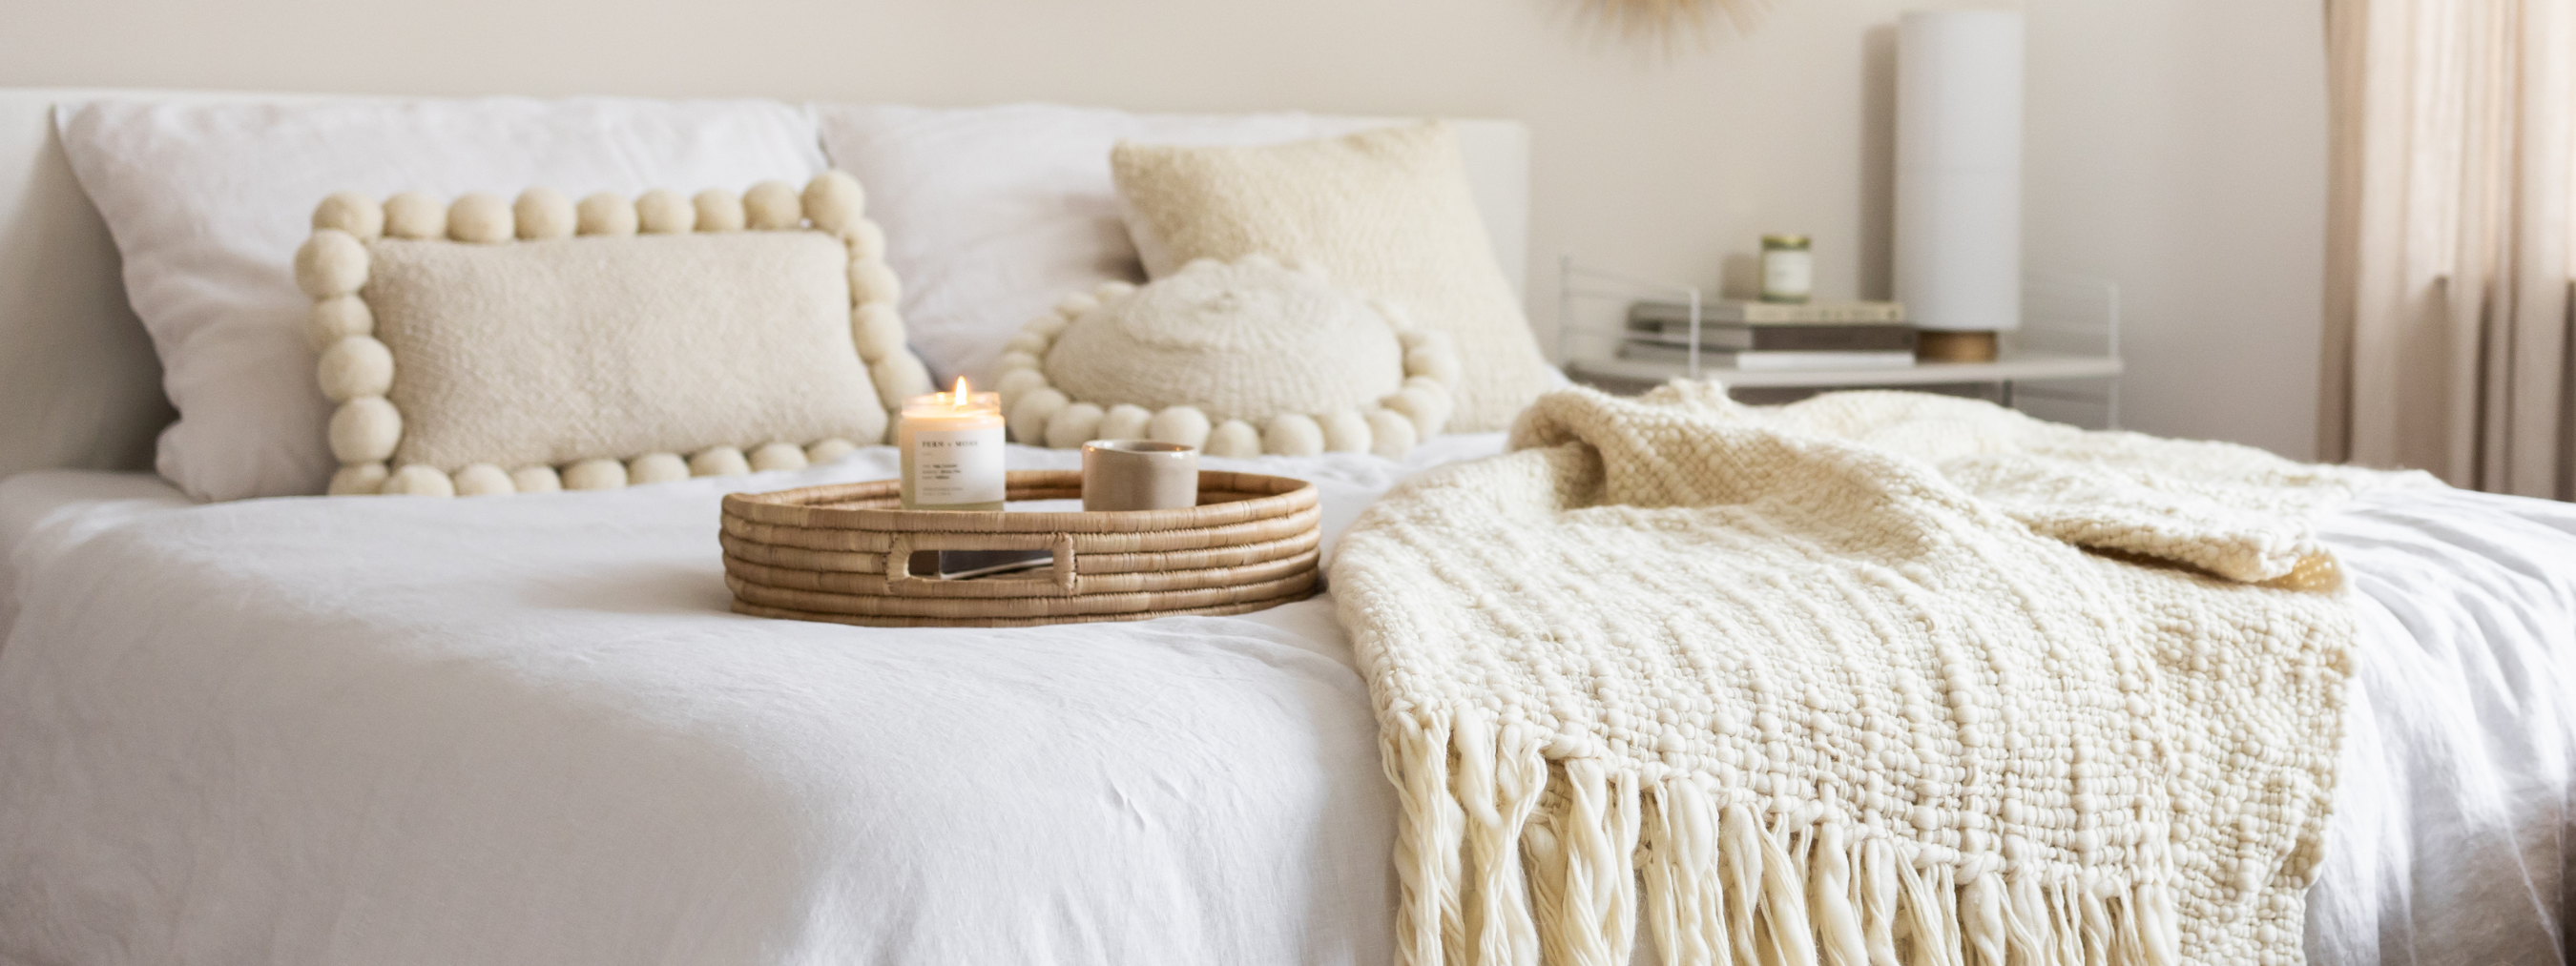 Eine hochwertige Wolldecke im Schlafzimmer sorgt für Geborgenheit. - By Native